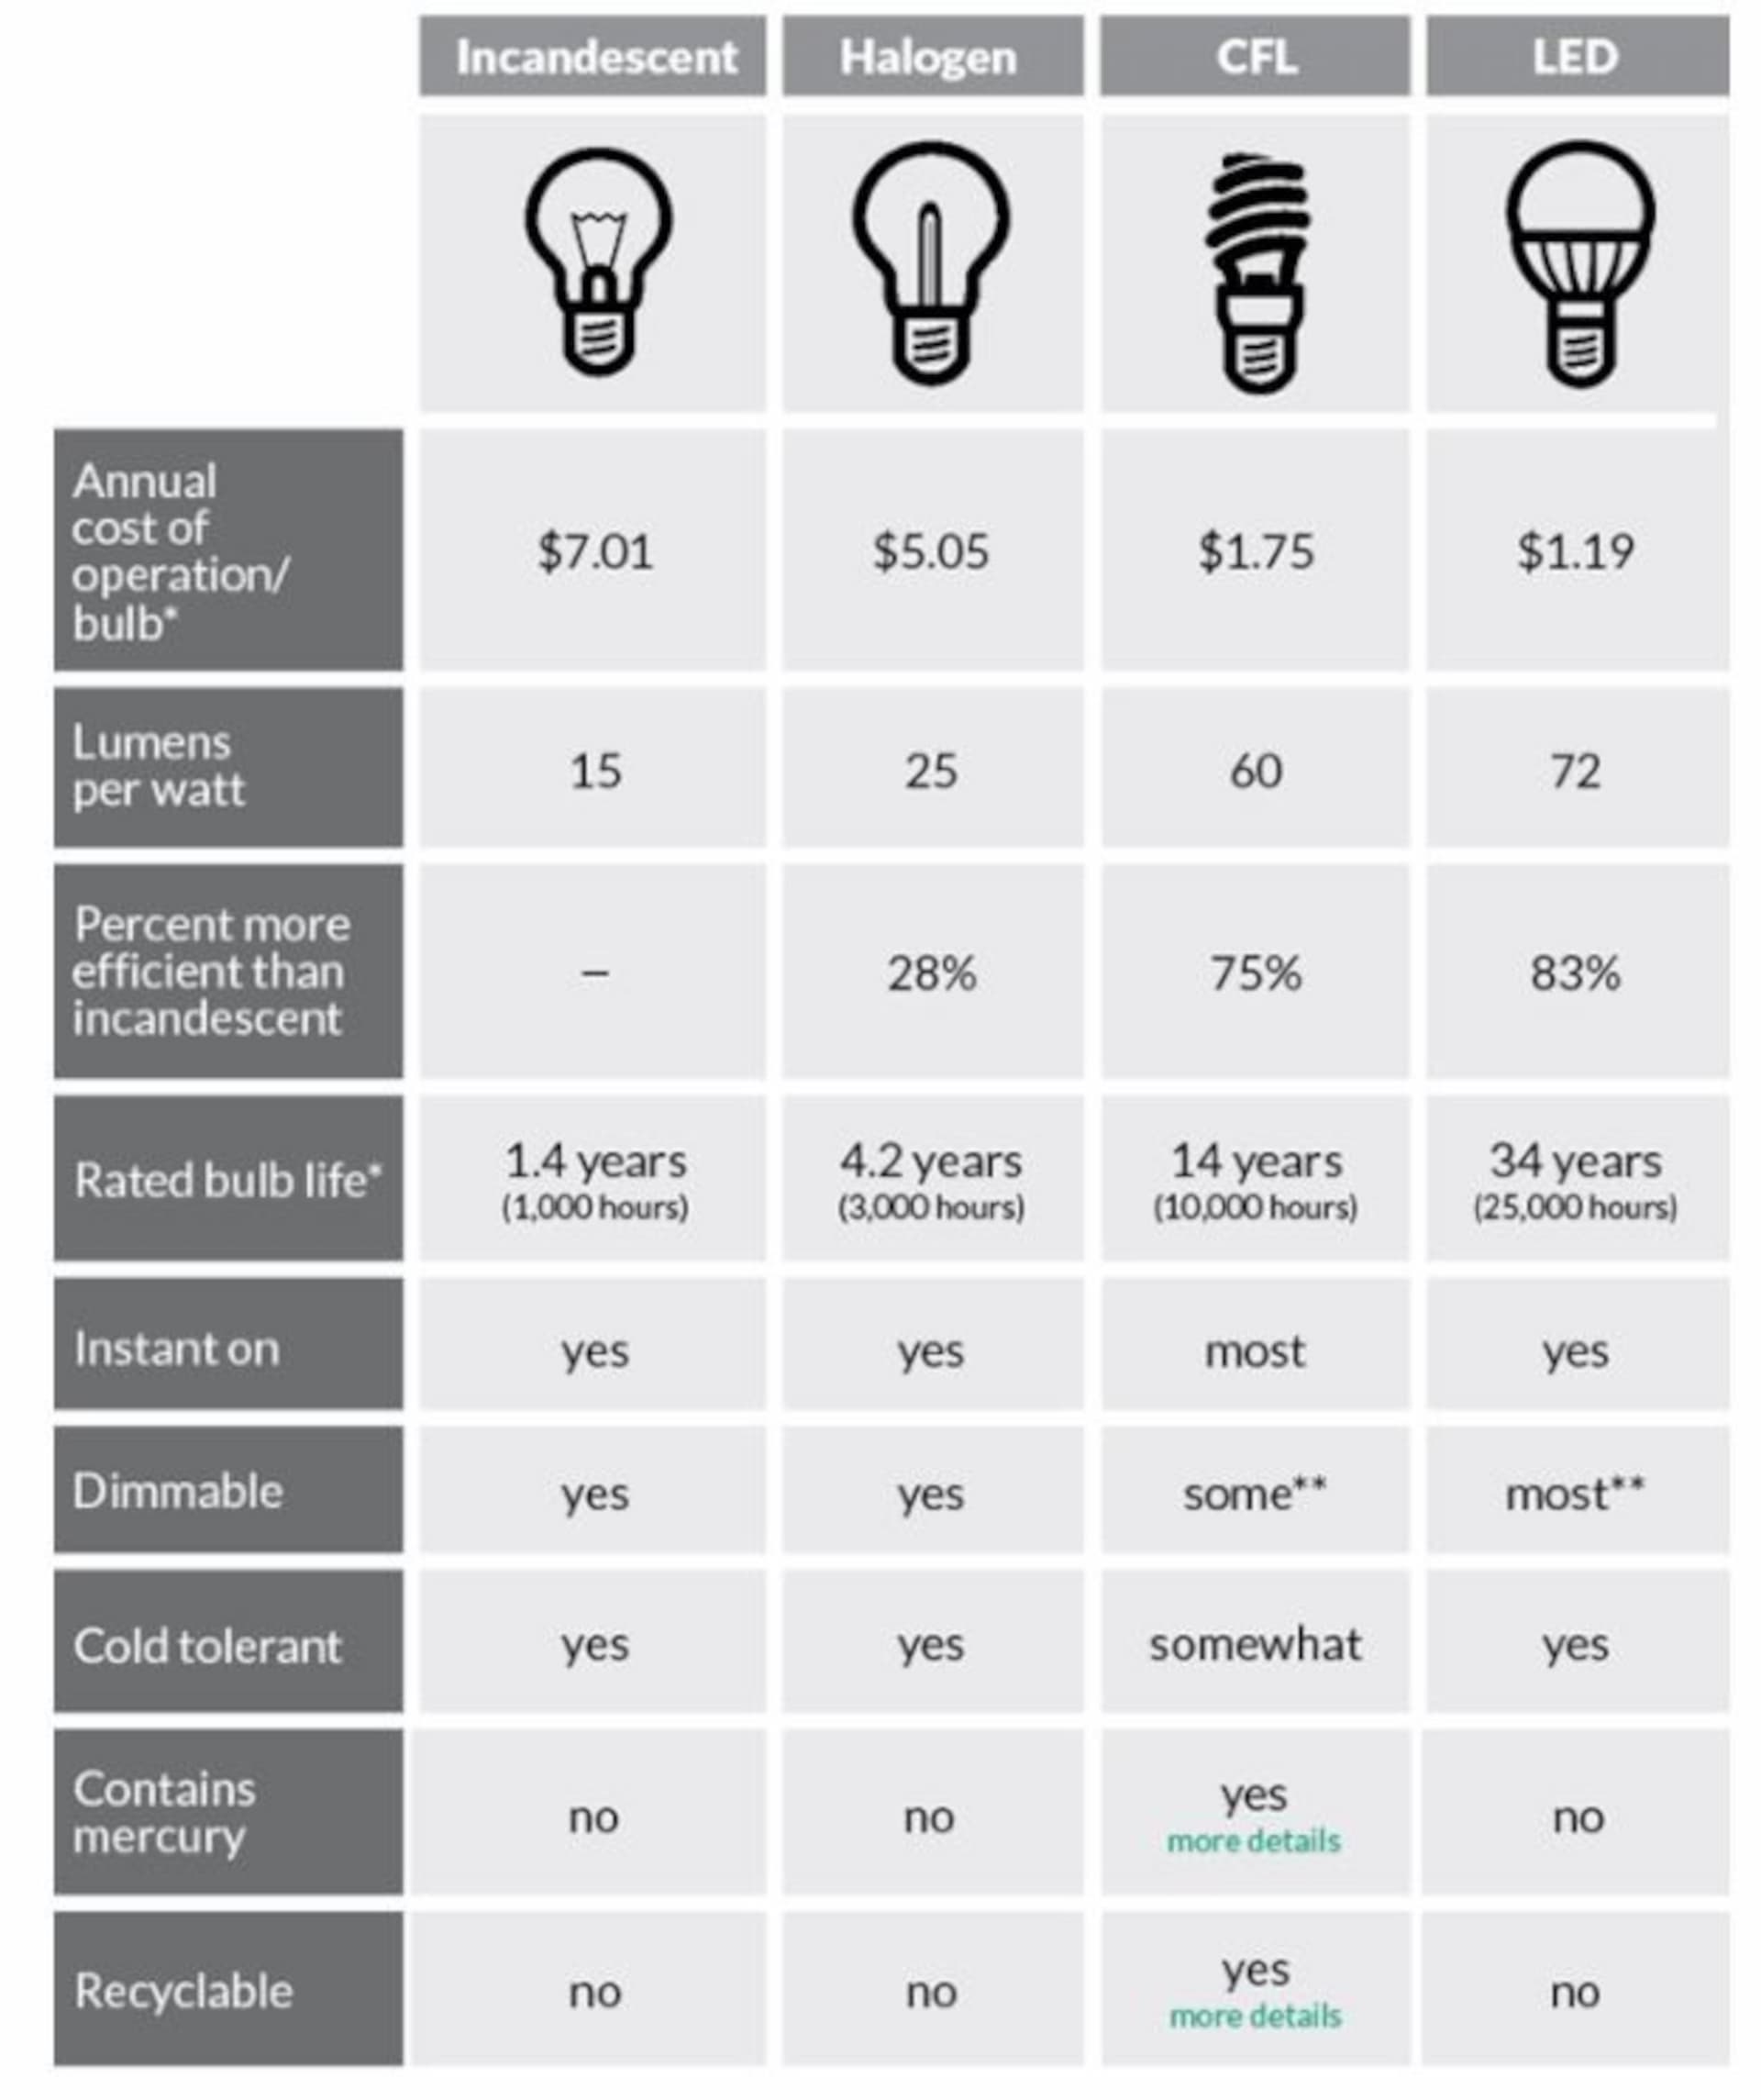 eksil kæmpe vedholdende CFL's vs. Halogen vs. Fluorescent vs. Incandescent vs. LED |  HomElectrical.com